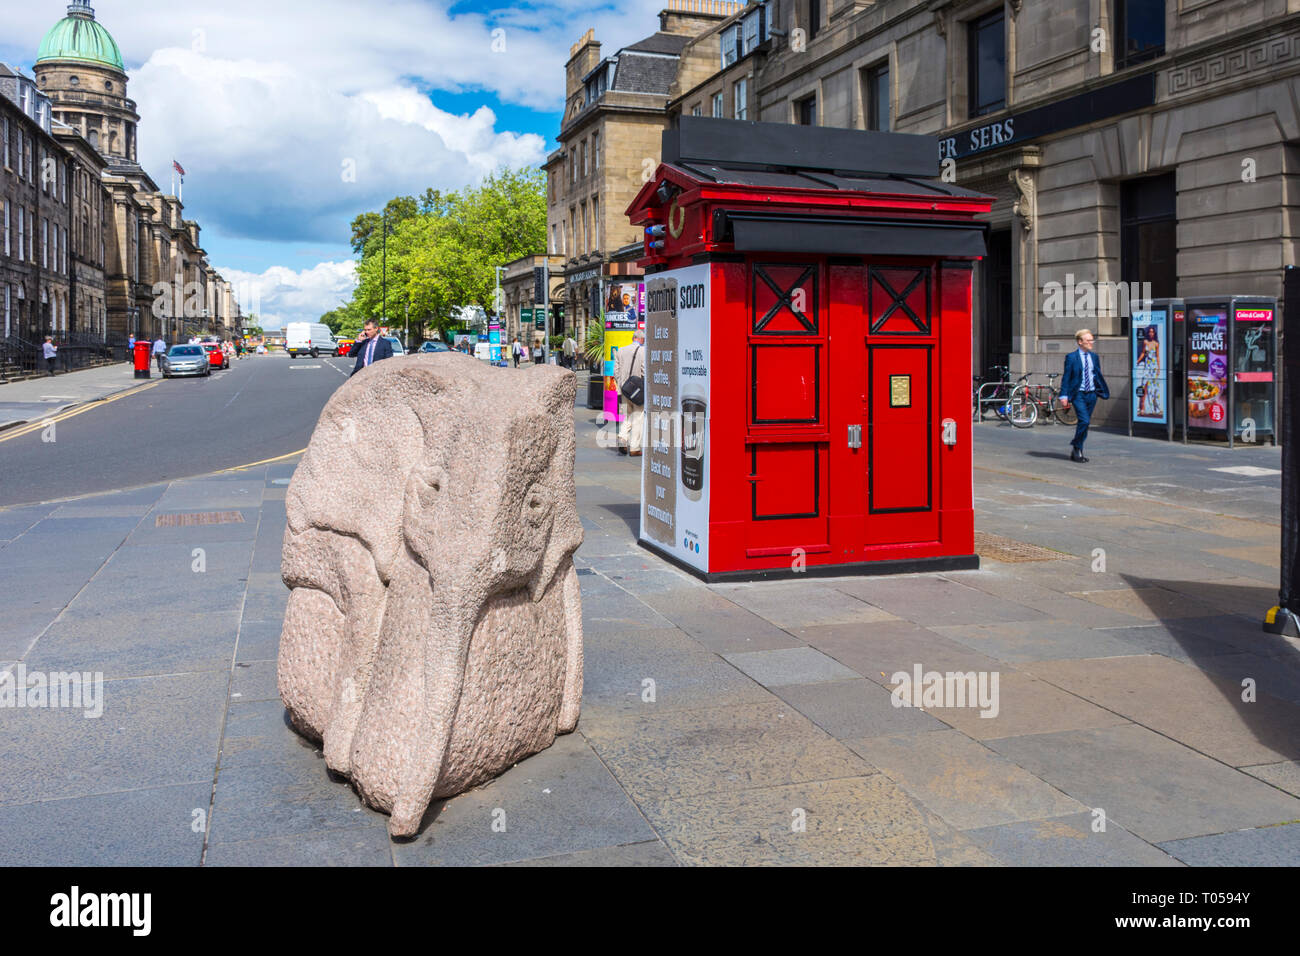 Bébé éléphant, une sculpture par Ronald Rae, et un ancien fort de la police à l'angle de l'espoir et de la rue Princes Street, Édimbourg, Écosse, Royaume-Uni. Banque D'Images